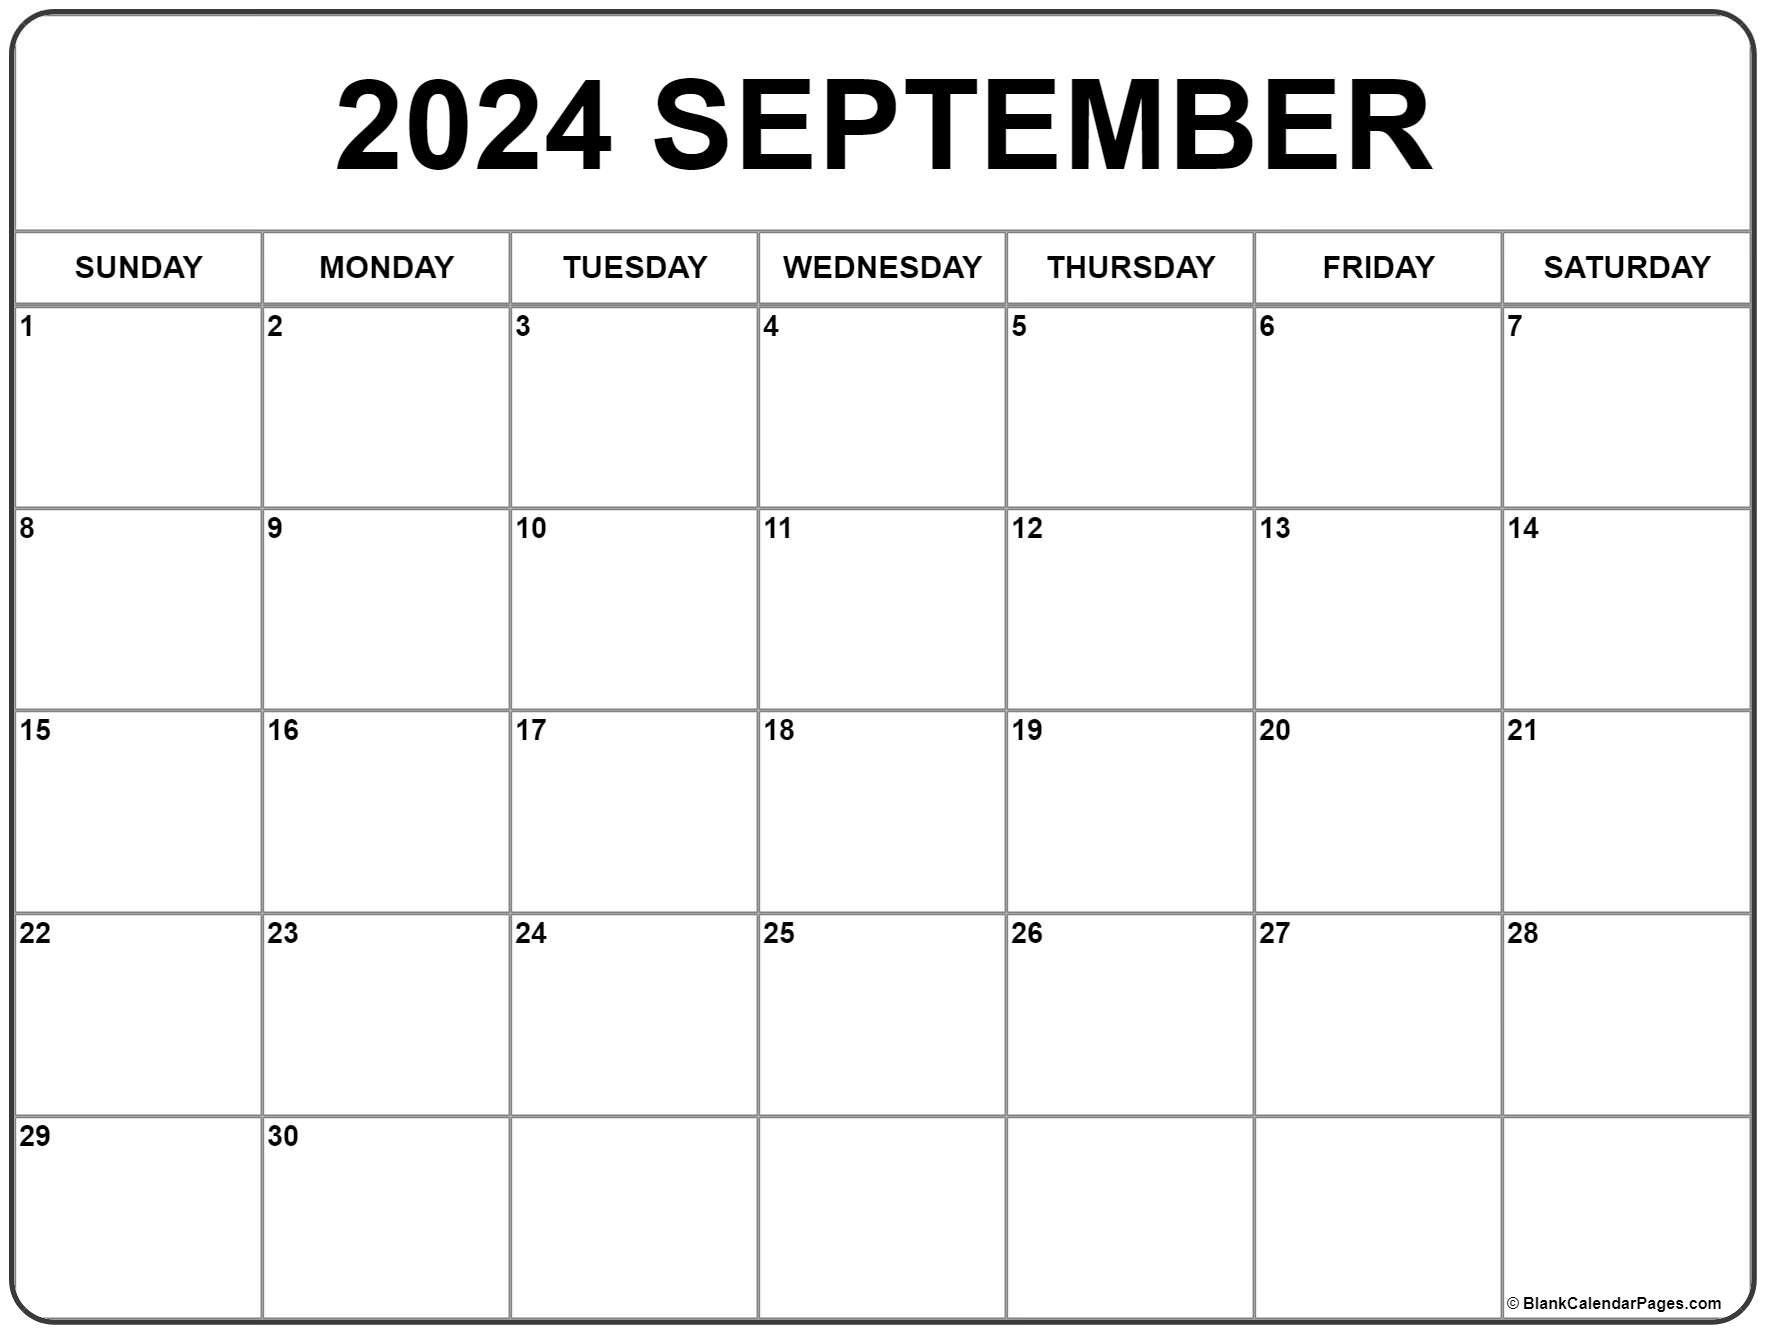 September 2022 Calendar Free Printable September 2022 Calendar | Free Printable Calendar Templates